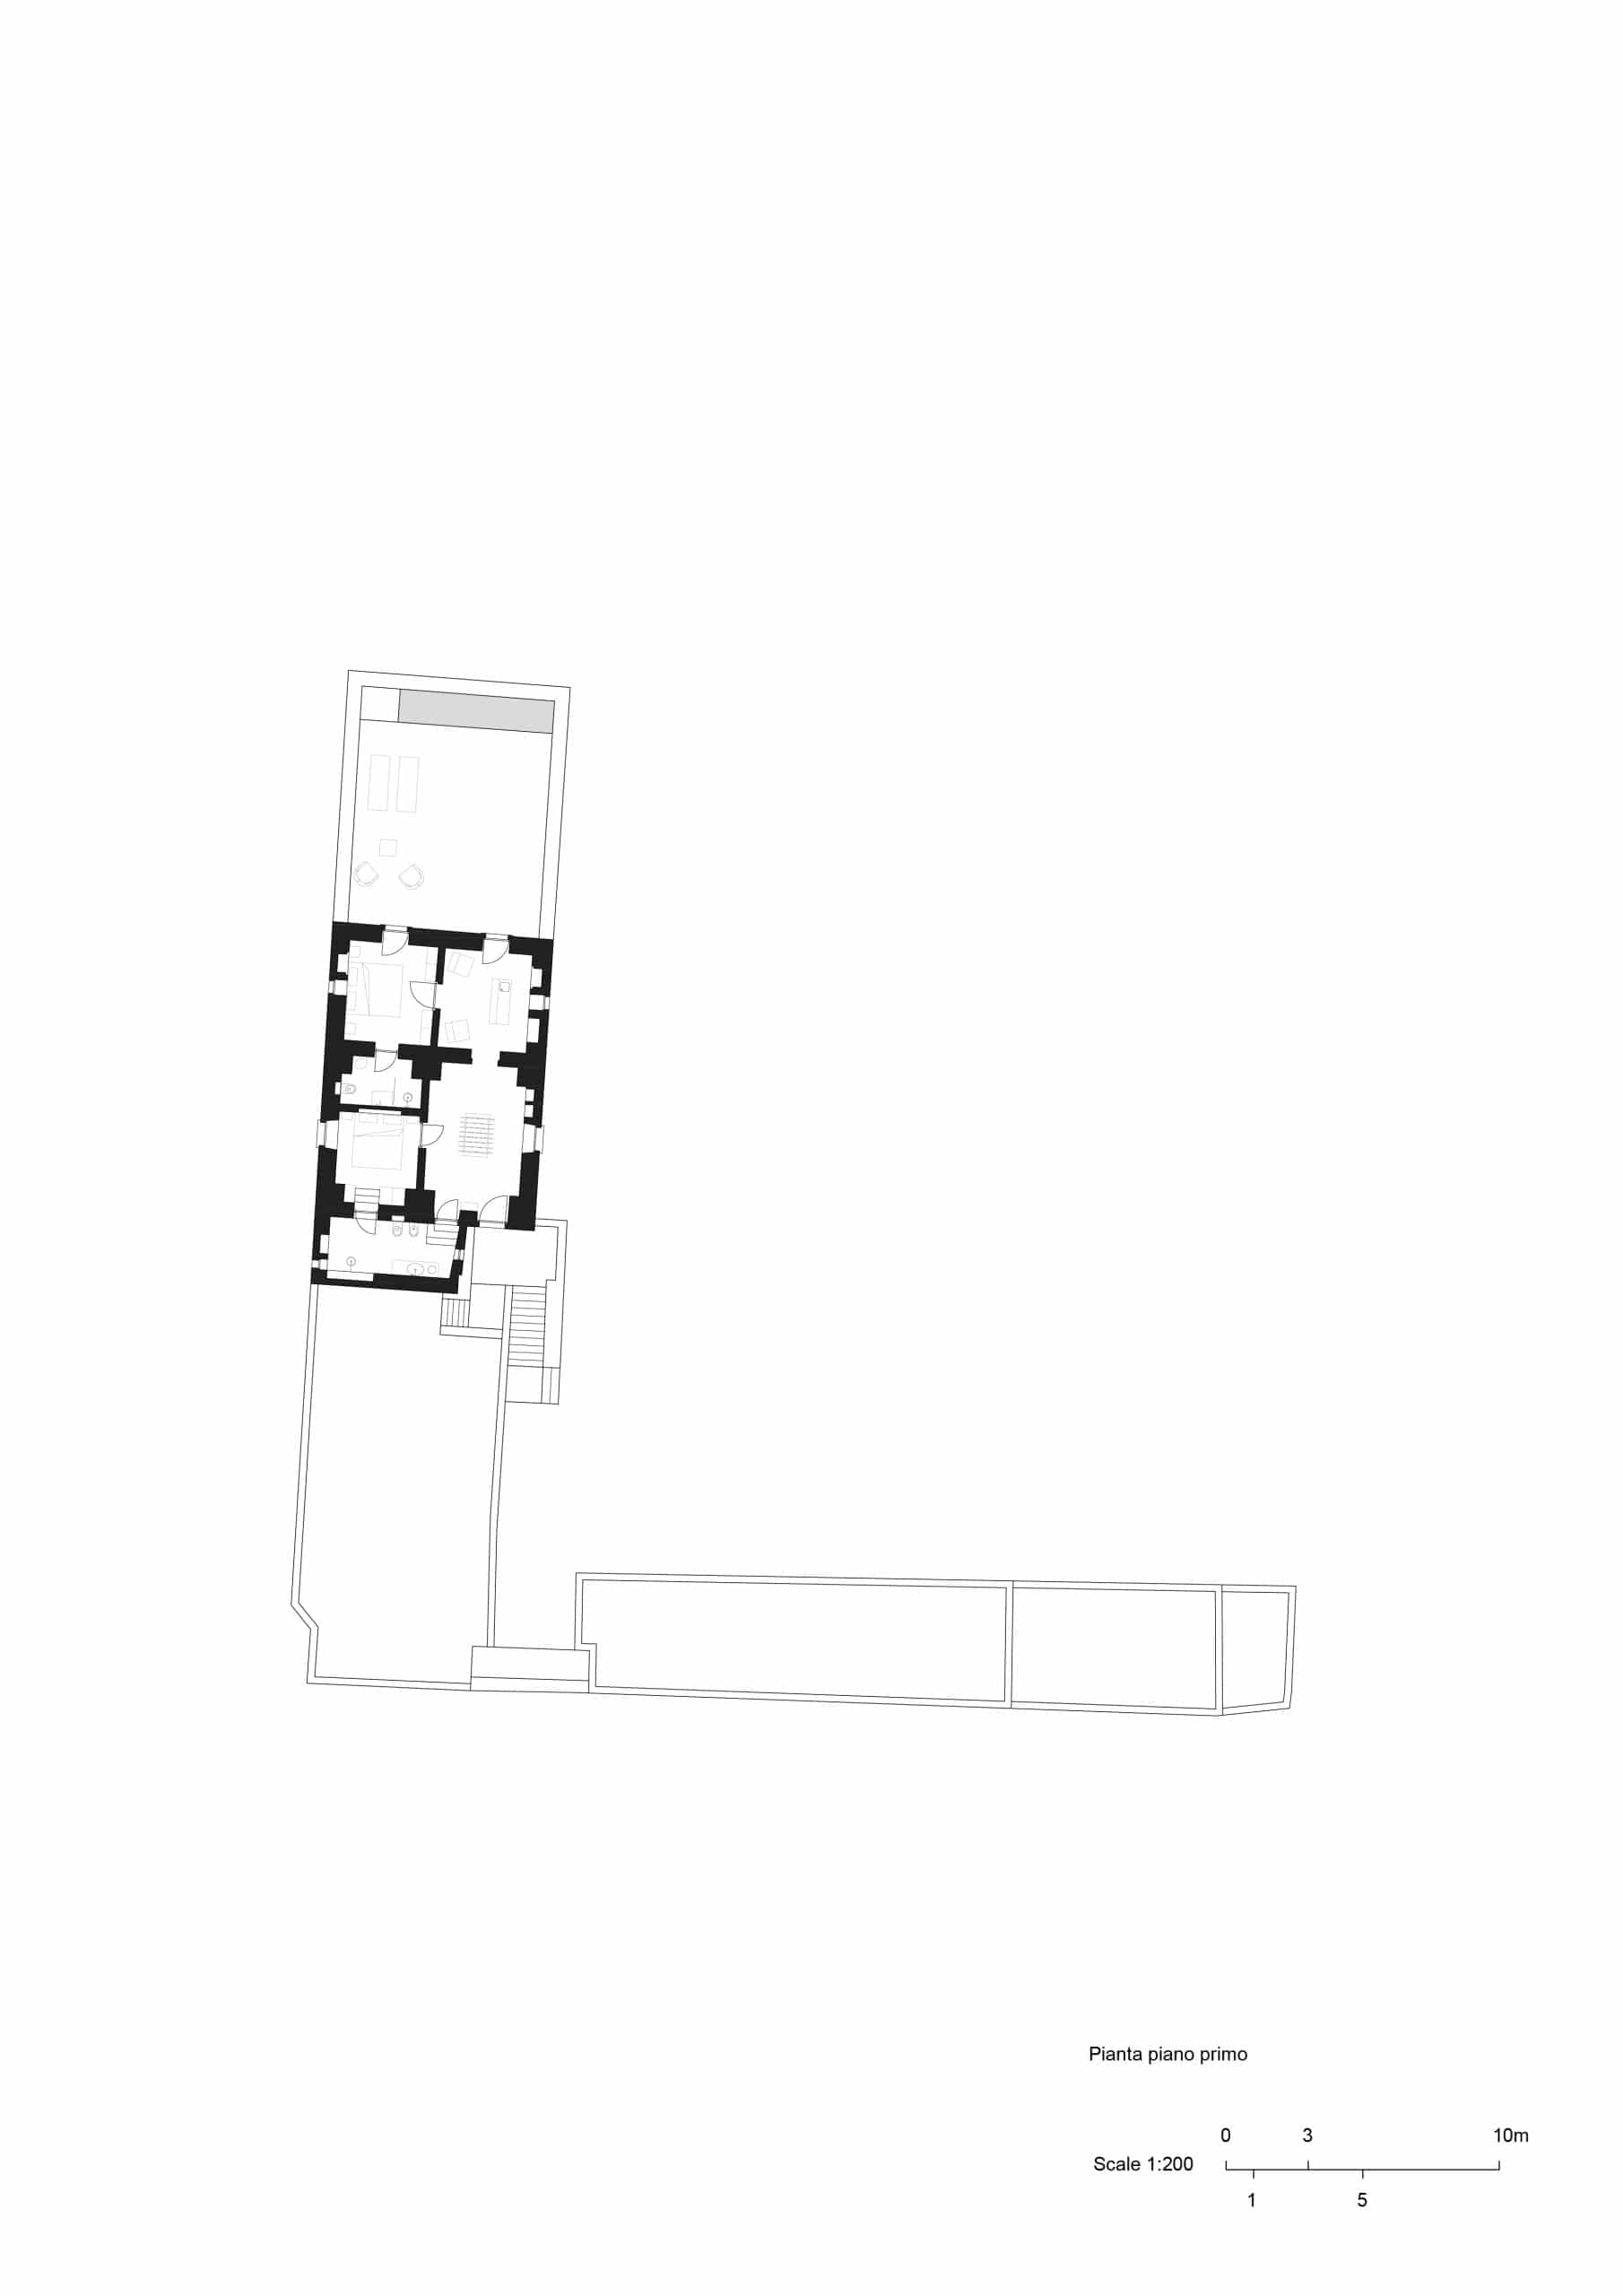 Grundriss erstes Obergeschoss, Masseria Belvedere, Carovigno, Zeichnung: Valari